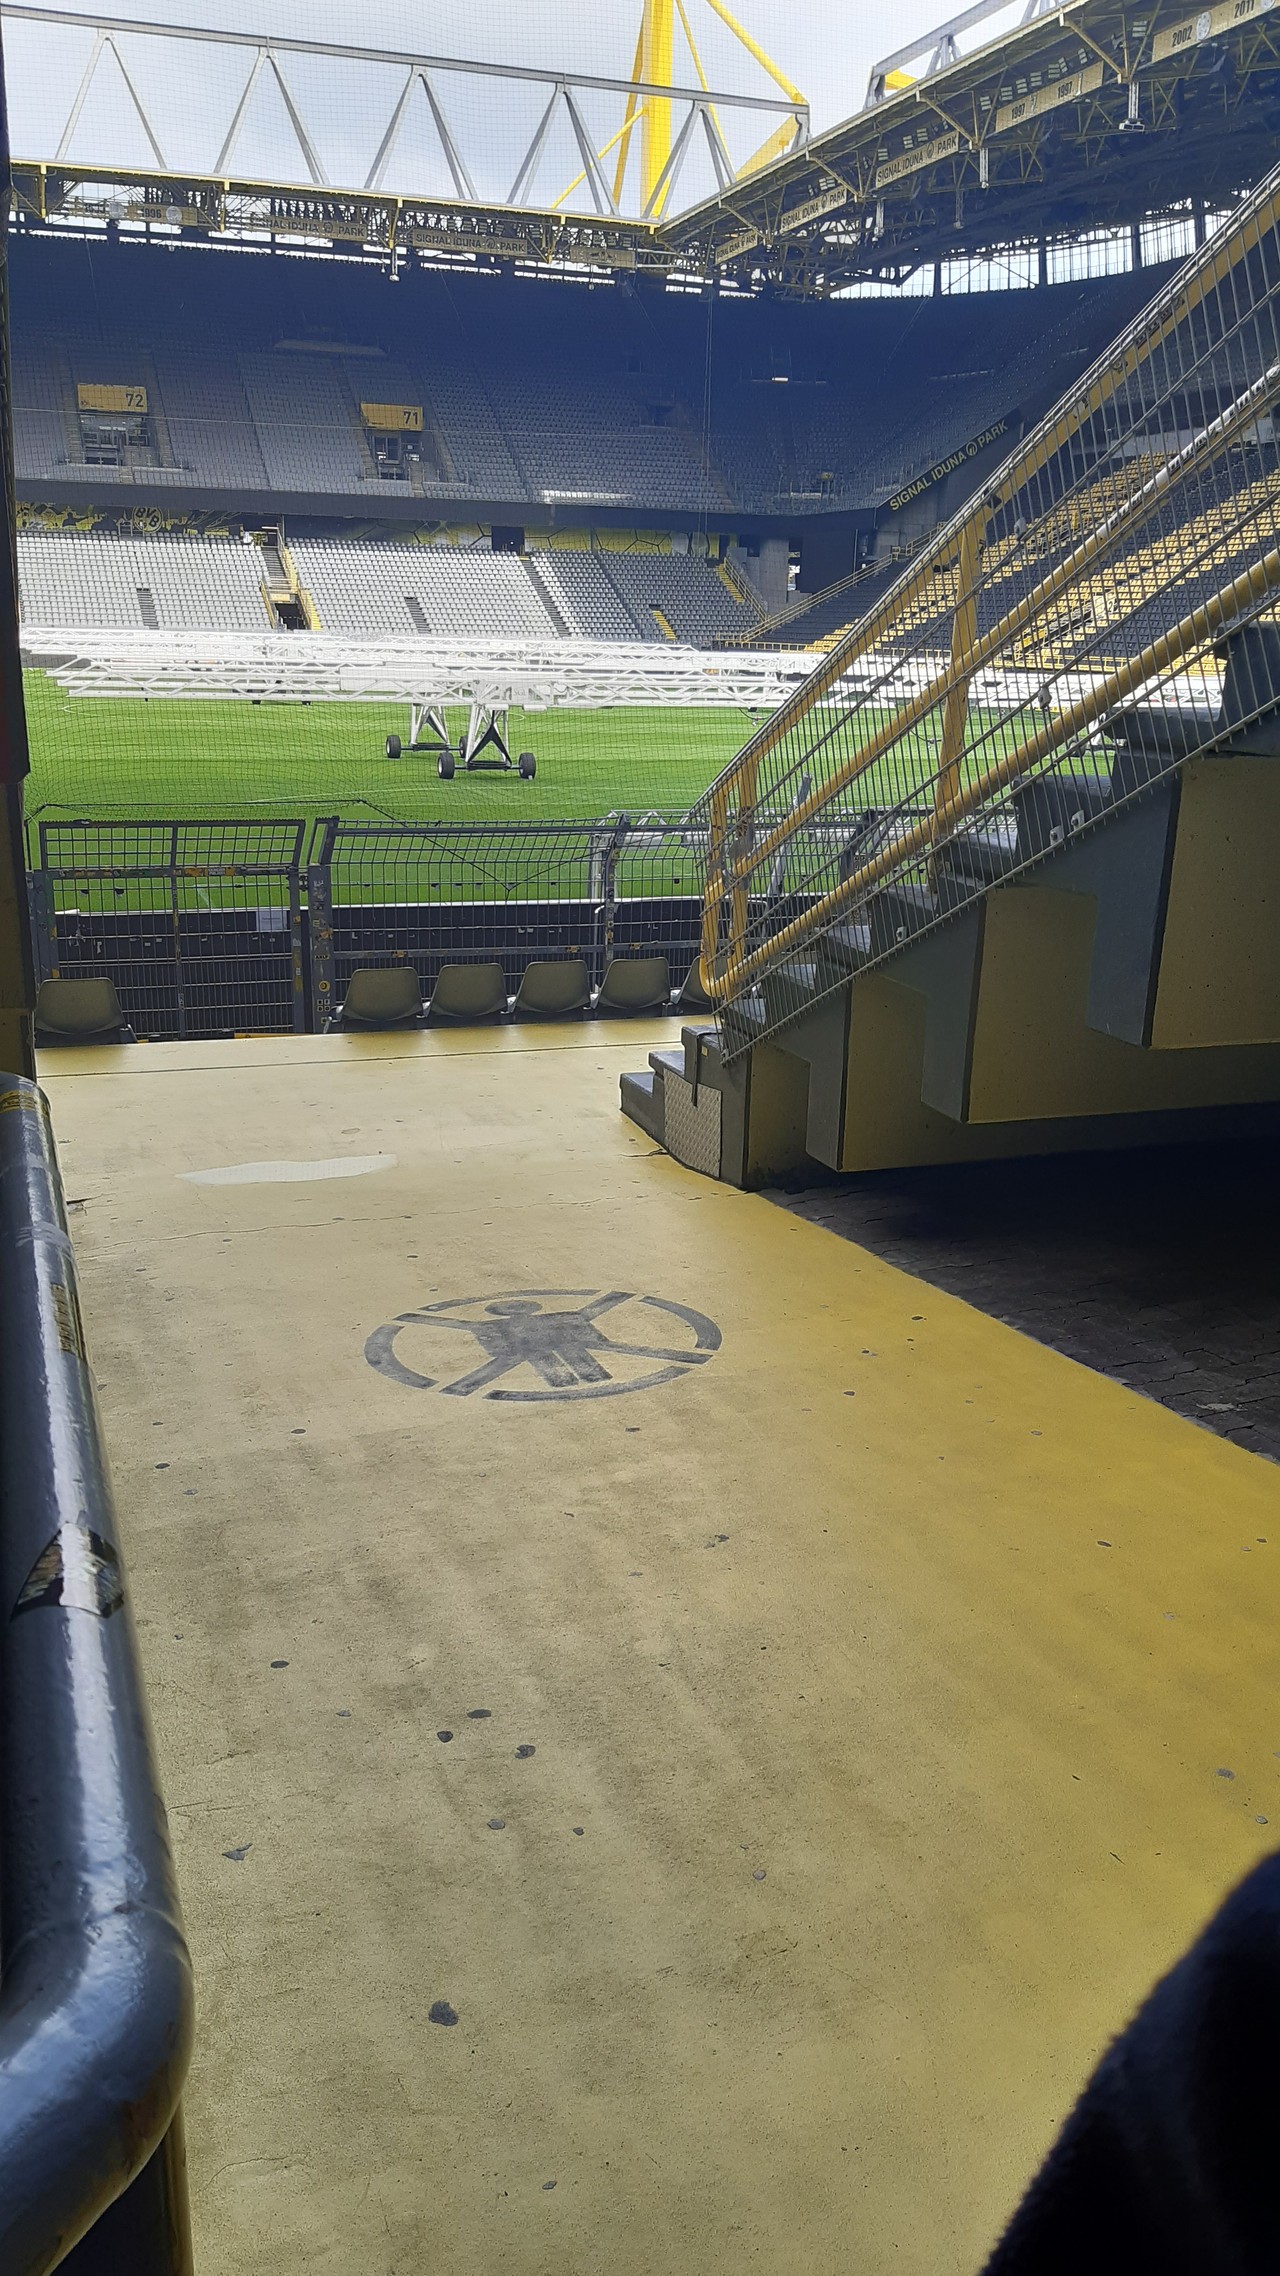 Auf dem Bild sieht man einen Durchgang zum Rasen, genauer für die Fans, die durch den Durchgang gehen, um zu den Sitzplätzen zu gelangen.